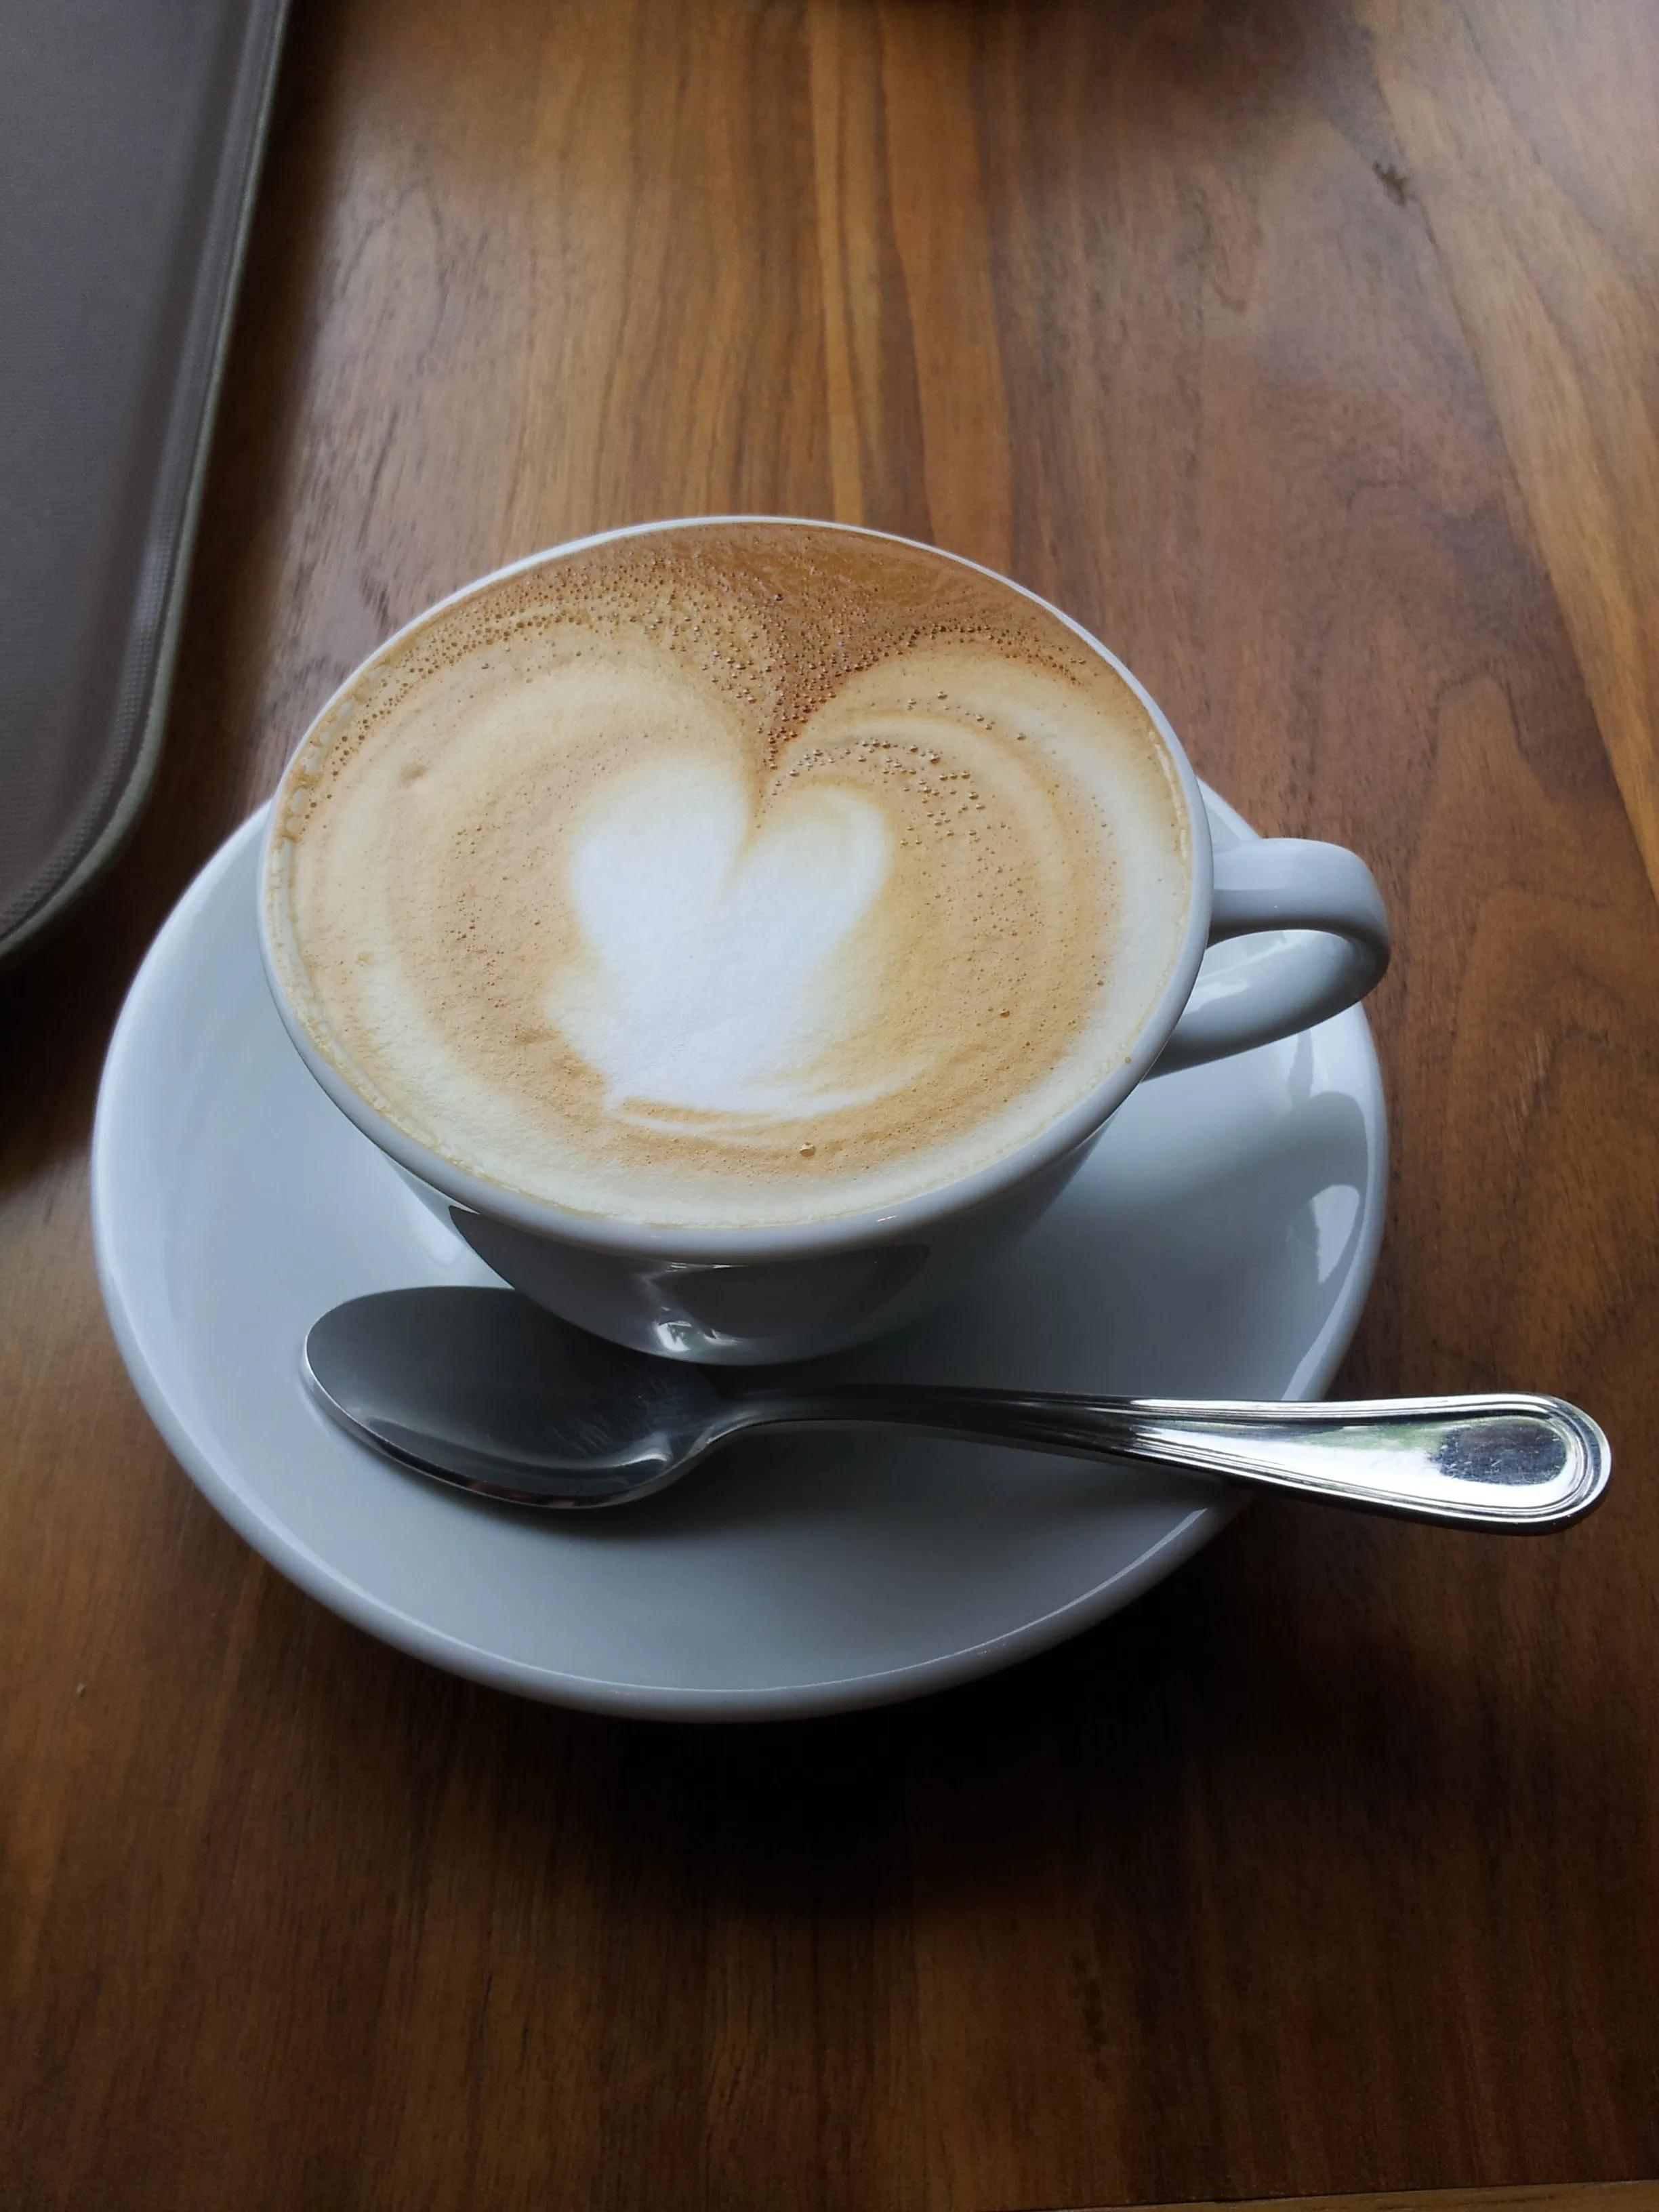 Gambar : latte, cappuccino, jantung, minum, espreso, cangkir kopi ...